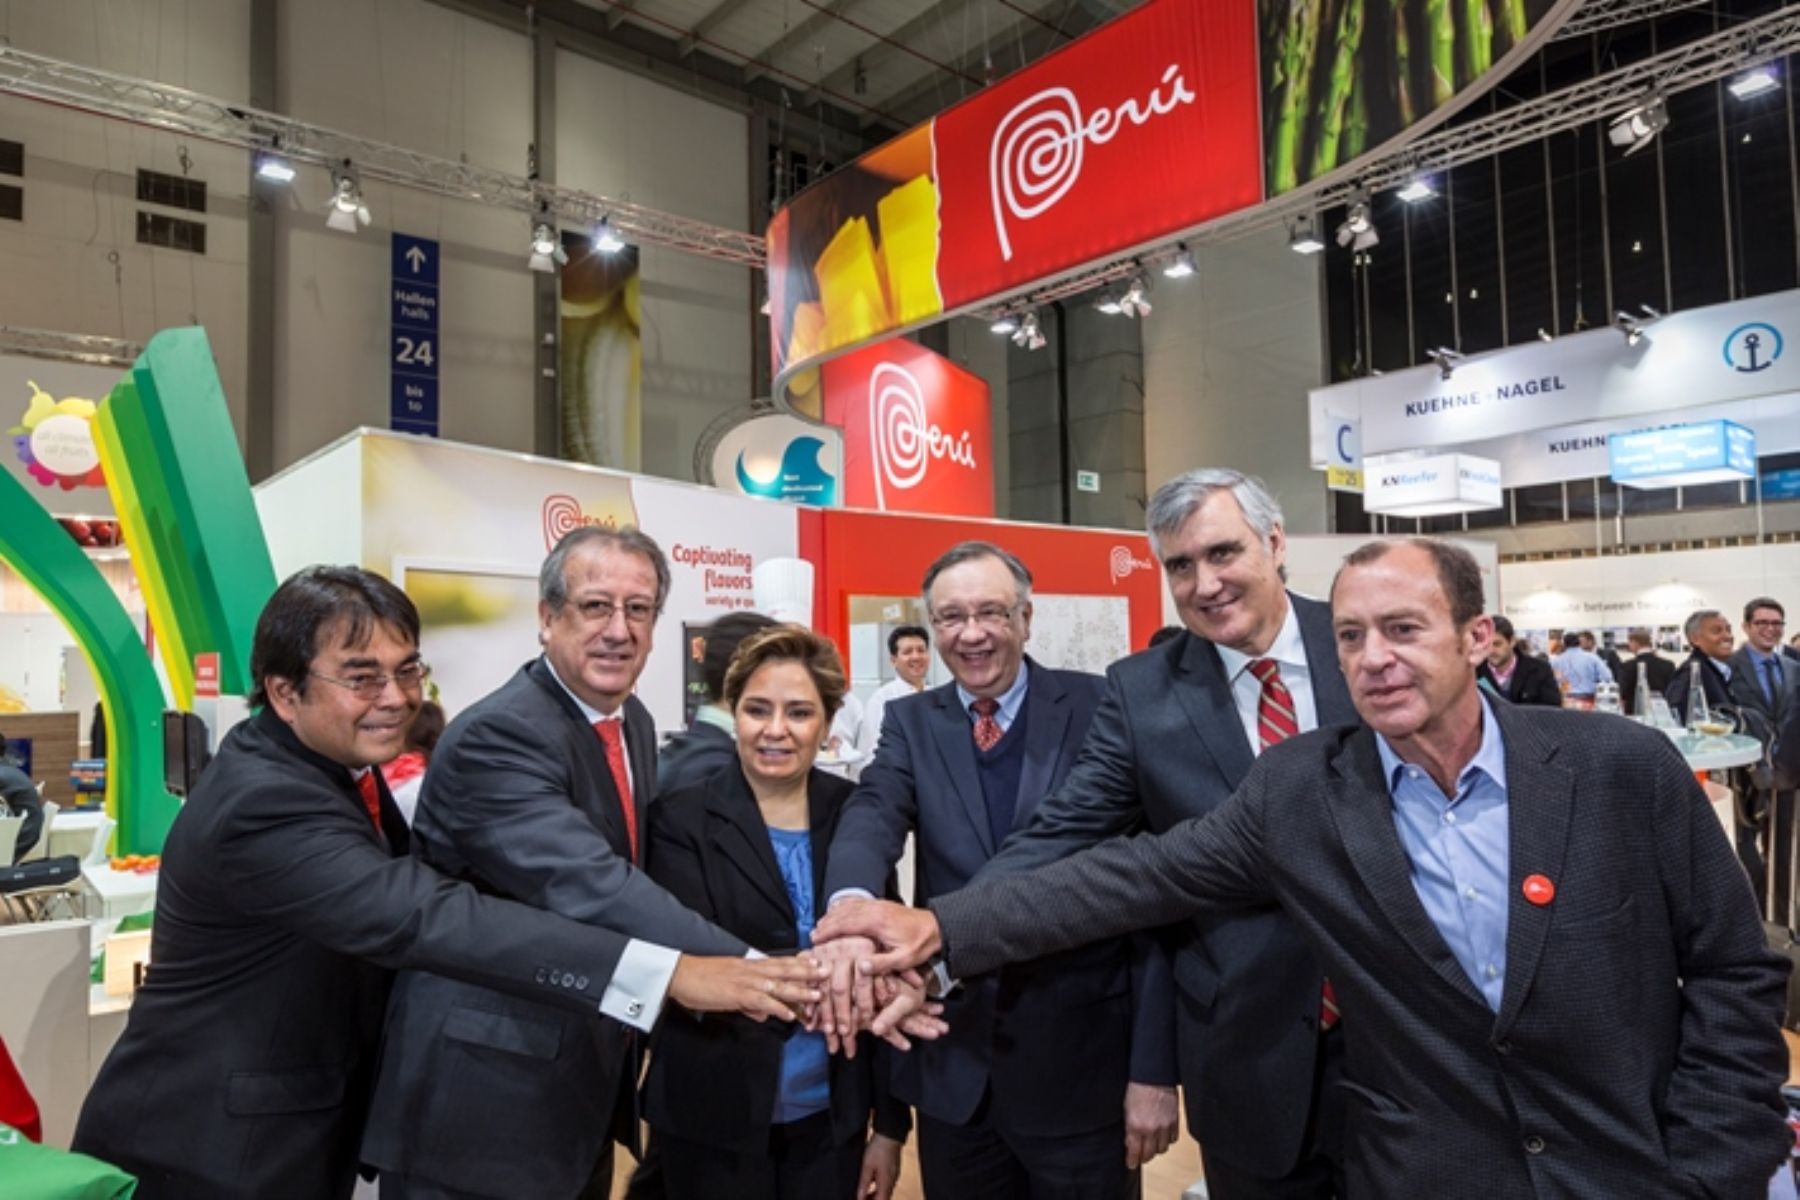 Países miembros de la Alianza del Pacífico inauguran sus pabellones en la Fruit Logistica 2014 en Alemania.